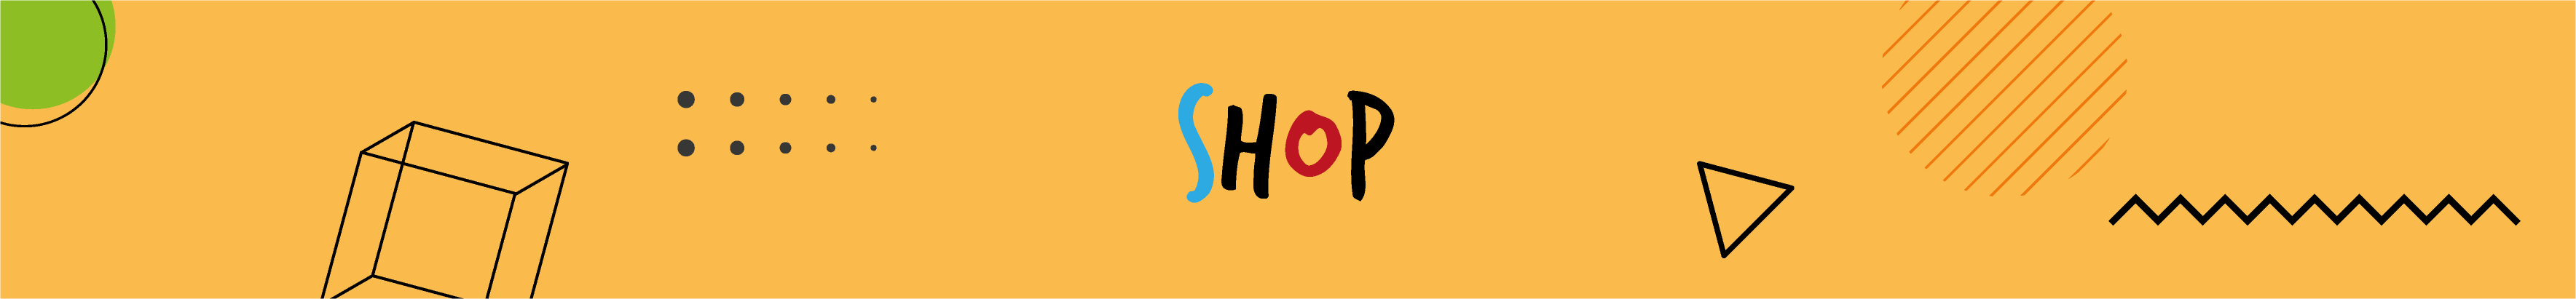 immagine usata nella sezione shop che mostra uno sfondo arancione con scritta shop